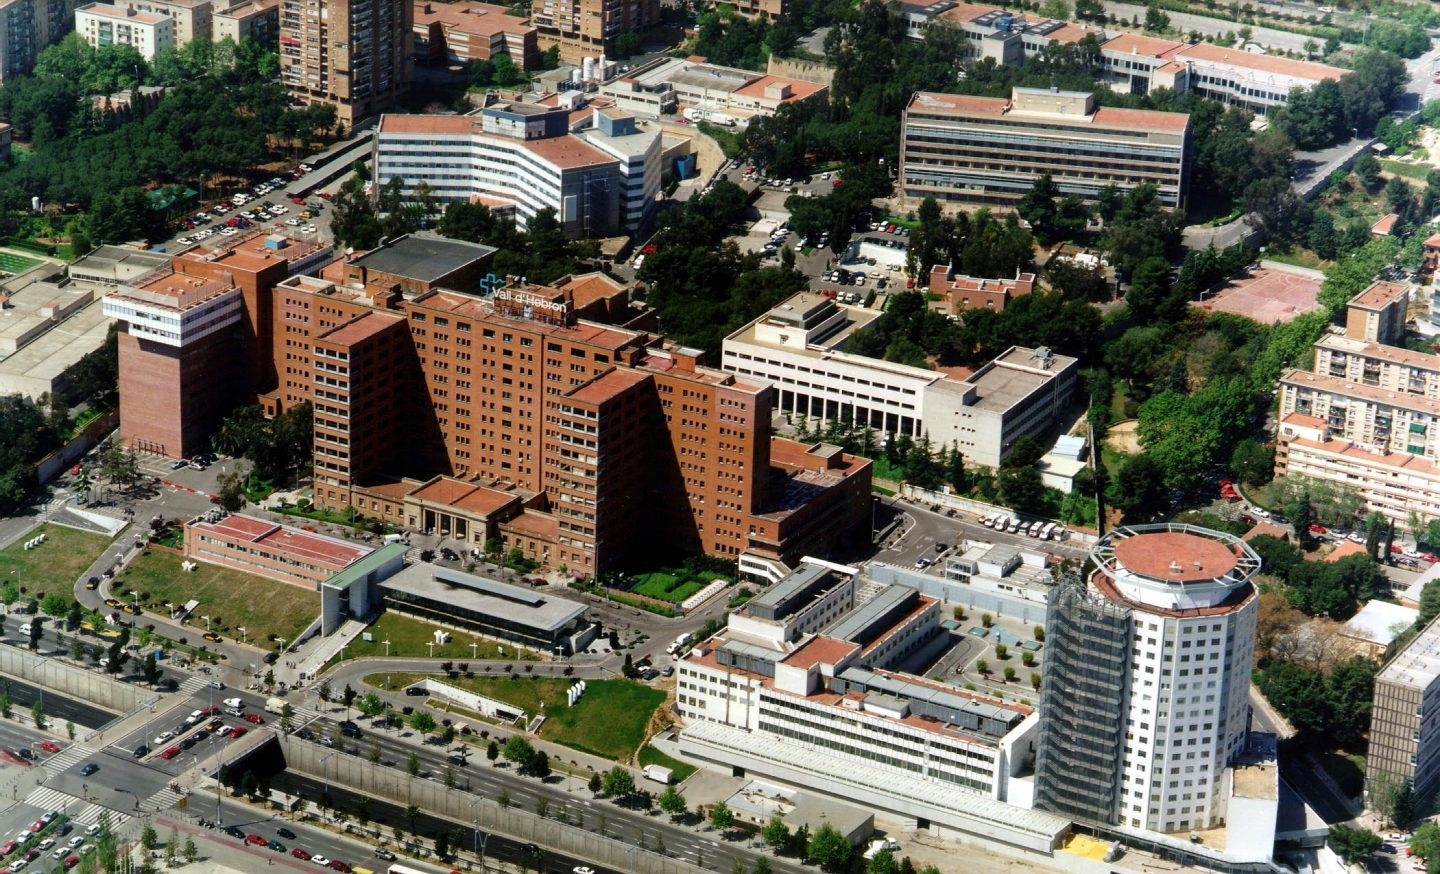 Vista aérea del hospital Vall d'Hebron en Barcelona, el mejor de España en oncología según el IEH 2017.